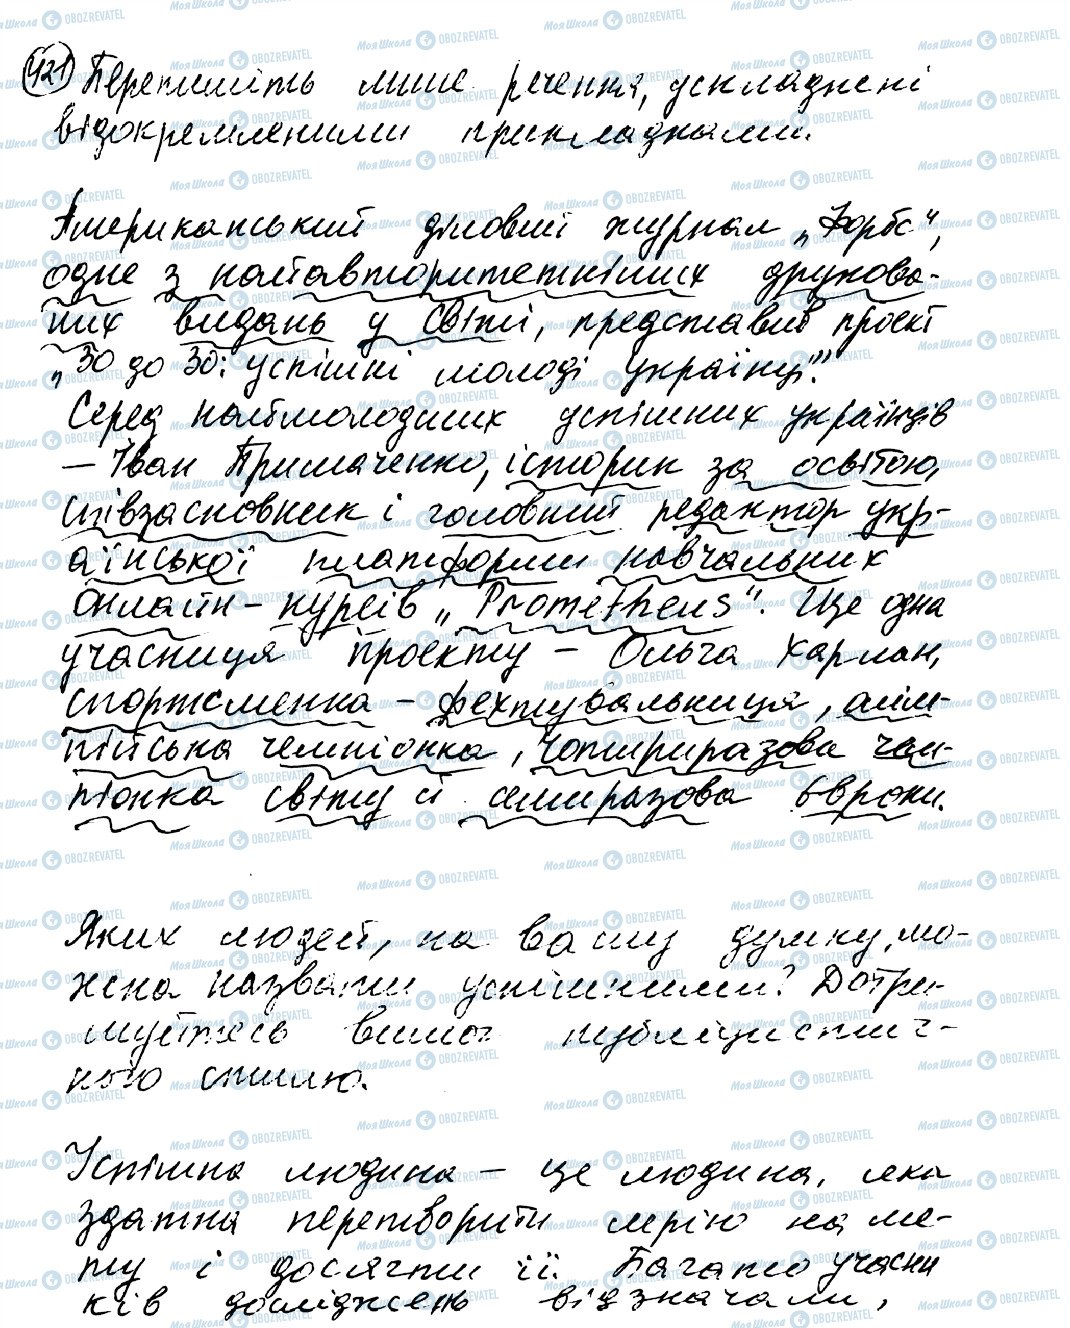 ГДЗ Українська мова 8 клас сторінка 421